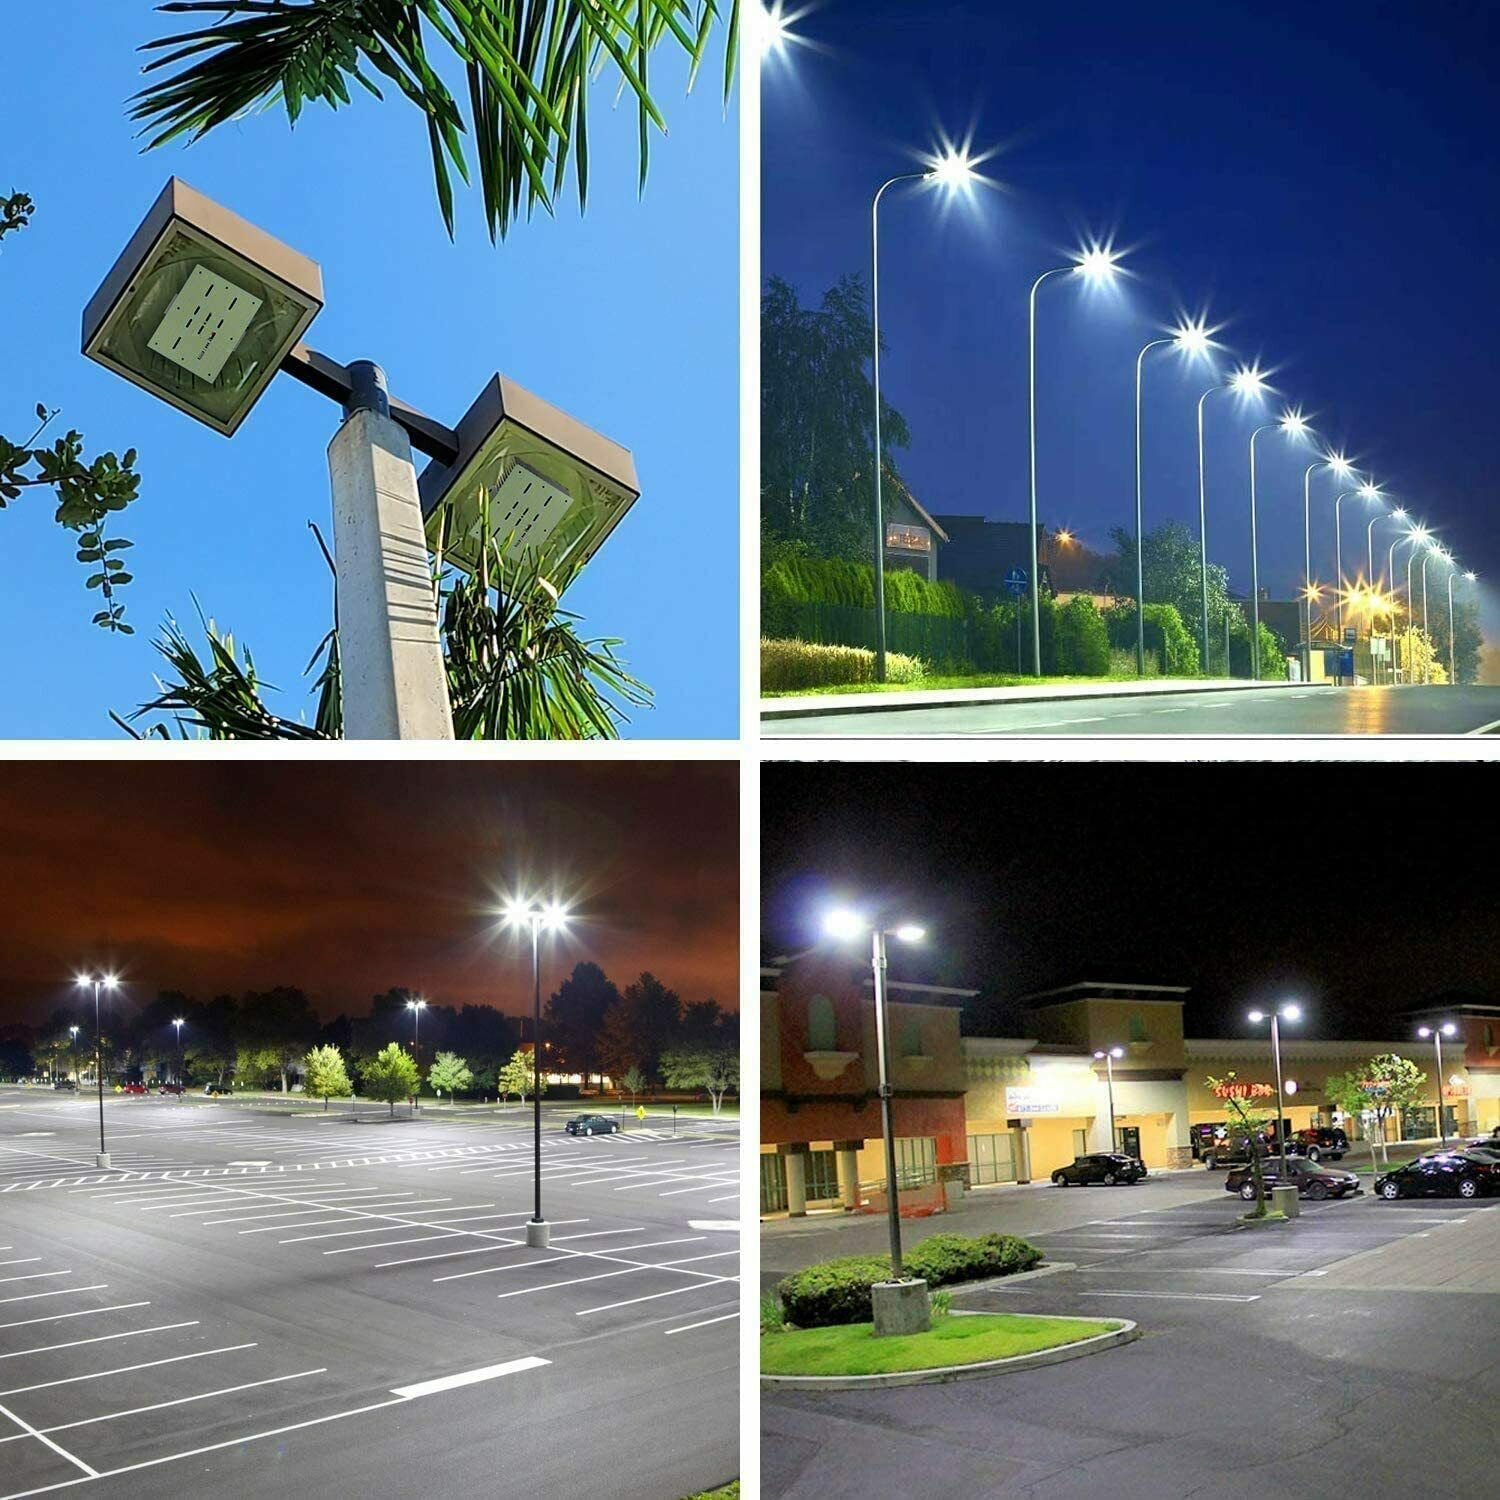 1000w-metal-halide-to-led-conversion-kit-parking-lot-light-led-retrofit-bulb240w-ebay